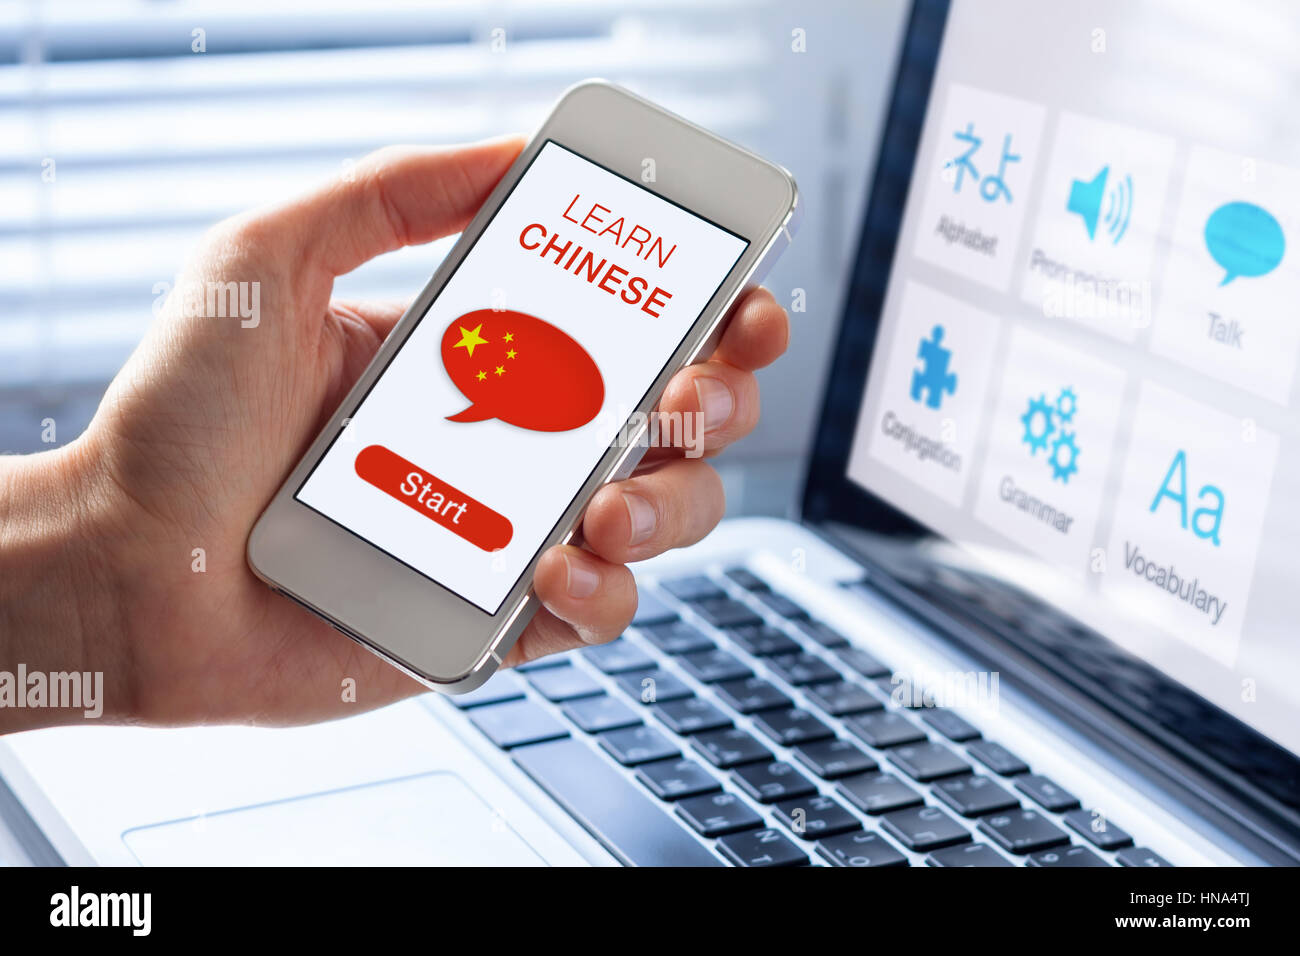 Apprendre le Mandarin language online concept avec une personne montrant l'e-learning application sur téléphone mobile avec le drapeau de la Chine Banque D'Images